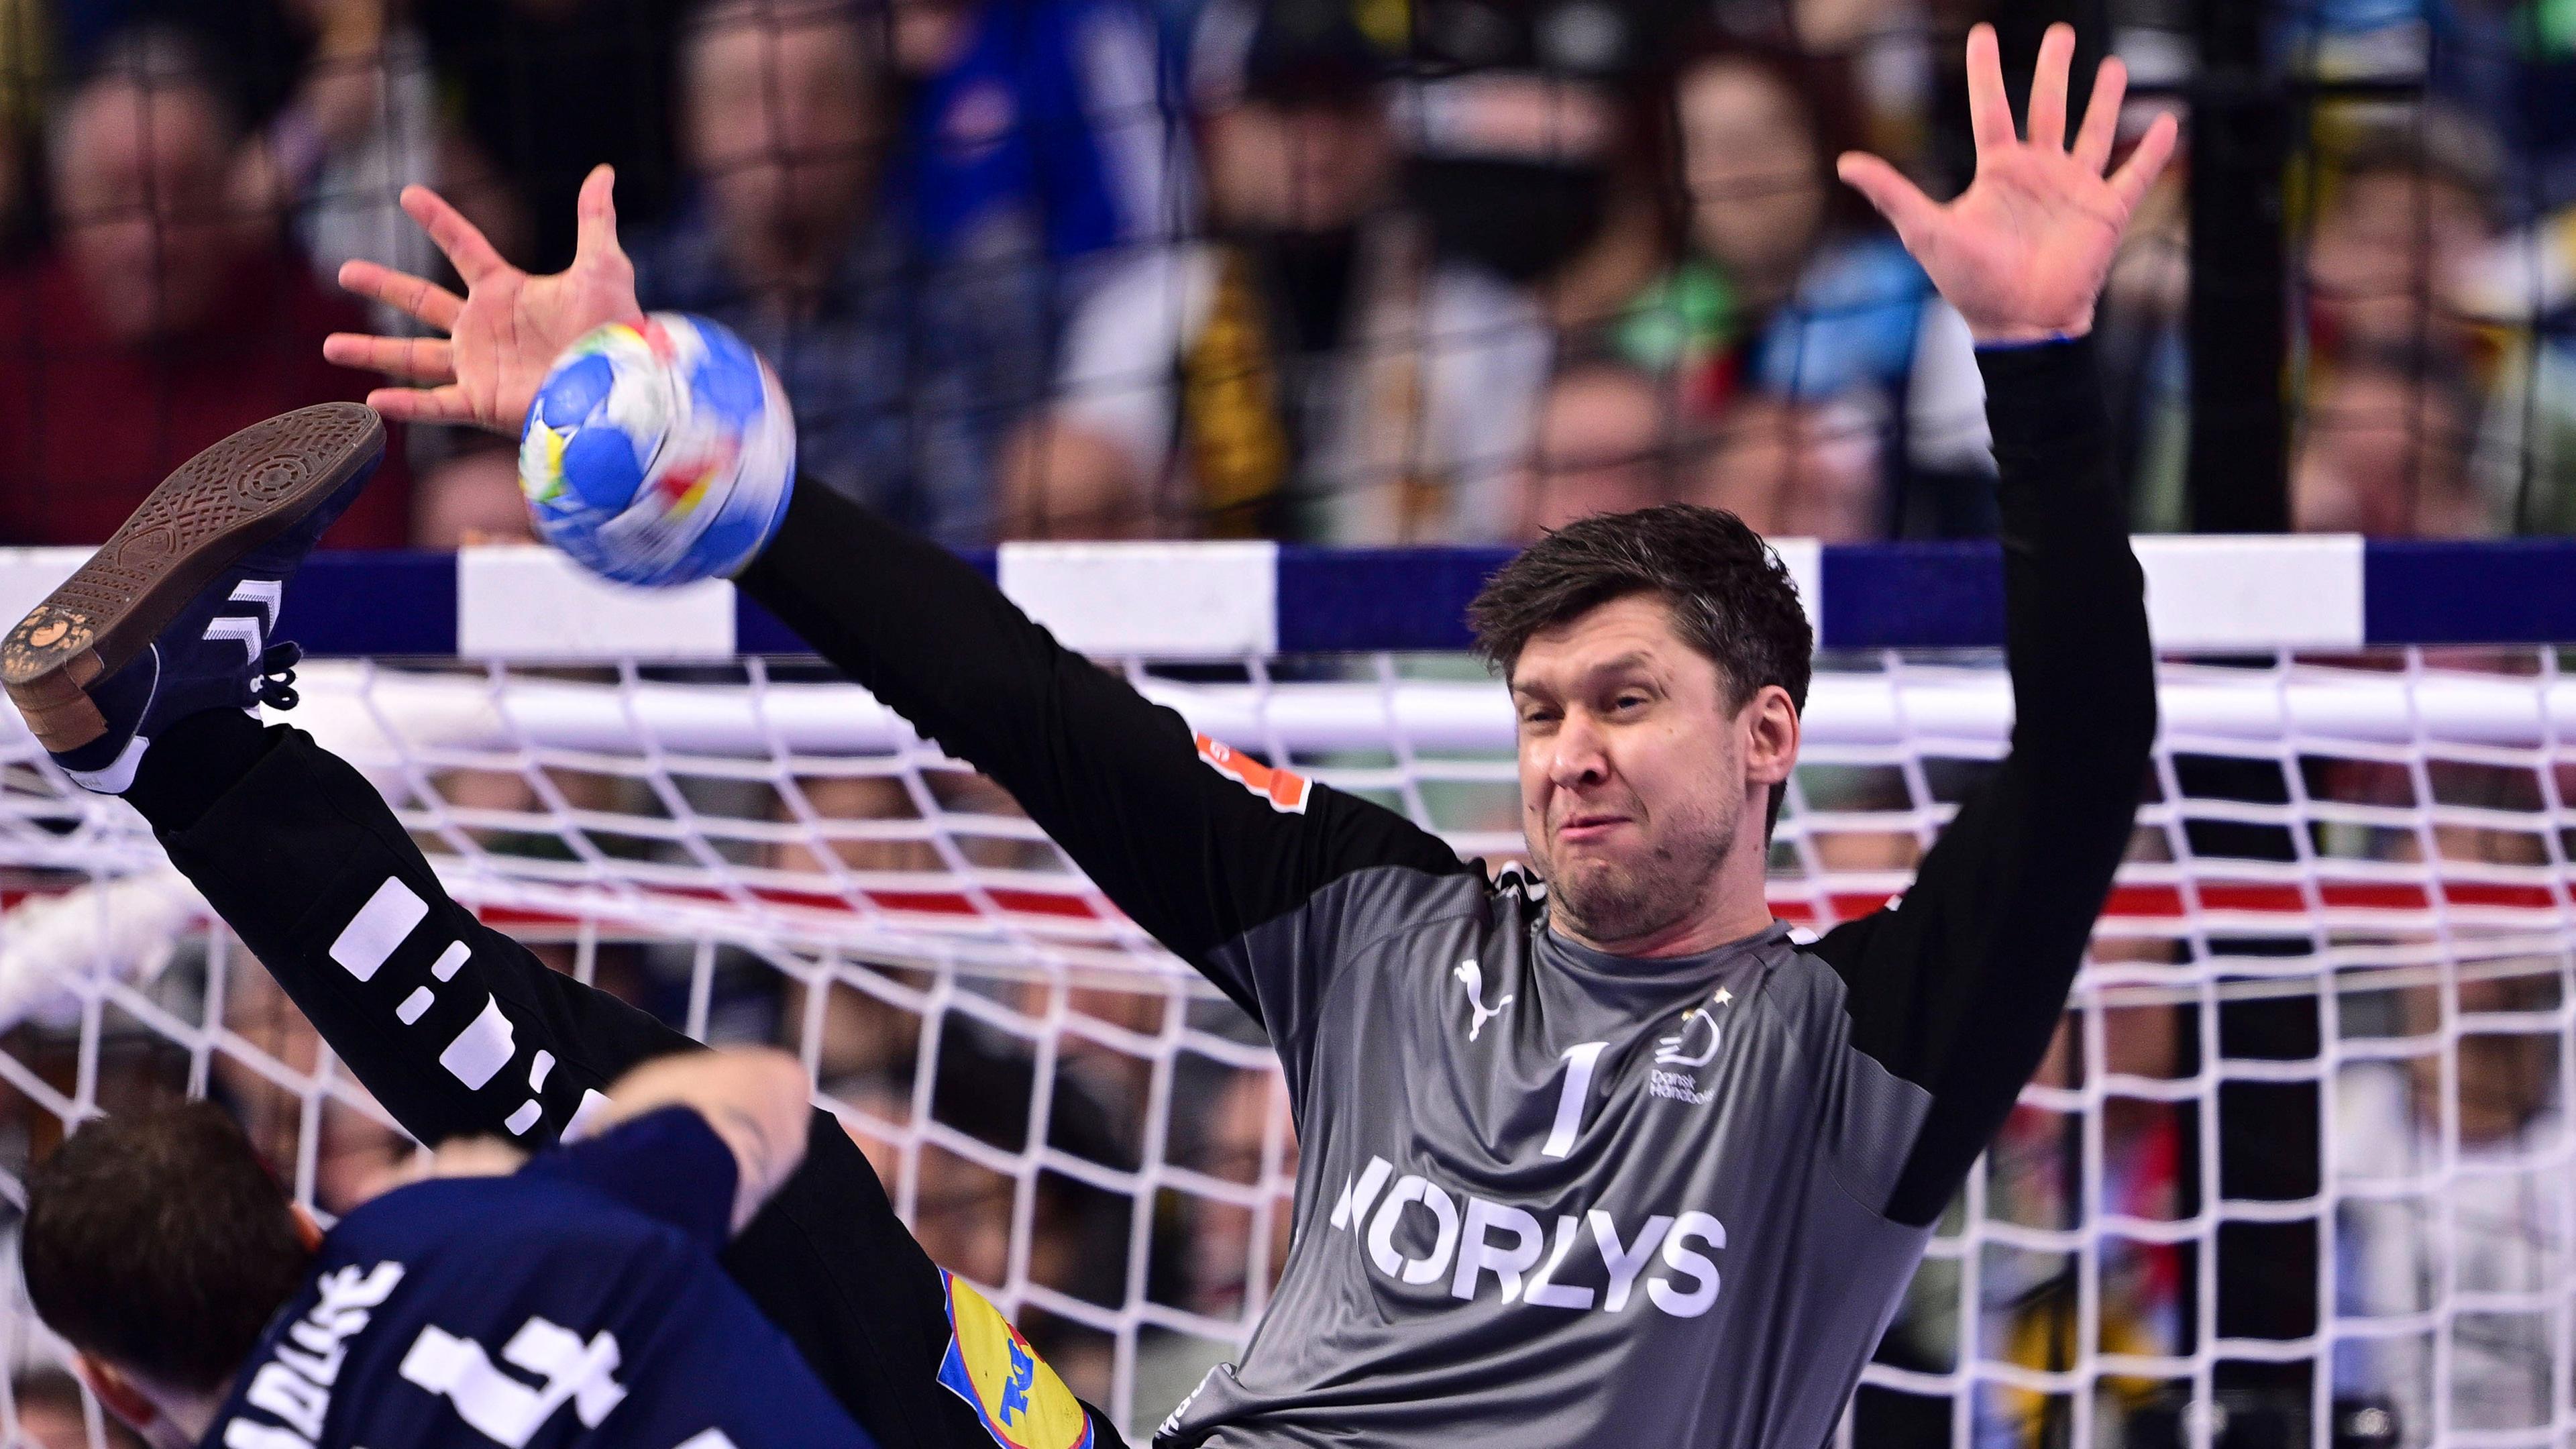 Fahnenträger für Dänemark: Handball-Nationaltorwart Niklas Landin. Der 35-Jährige ist Olympiasieger 2016, dreimaliger Weltmeister und zweifacher Welthandballer des Jahres.